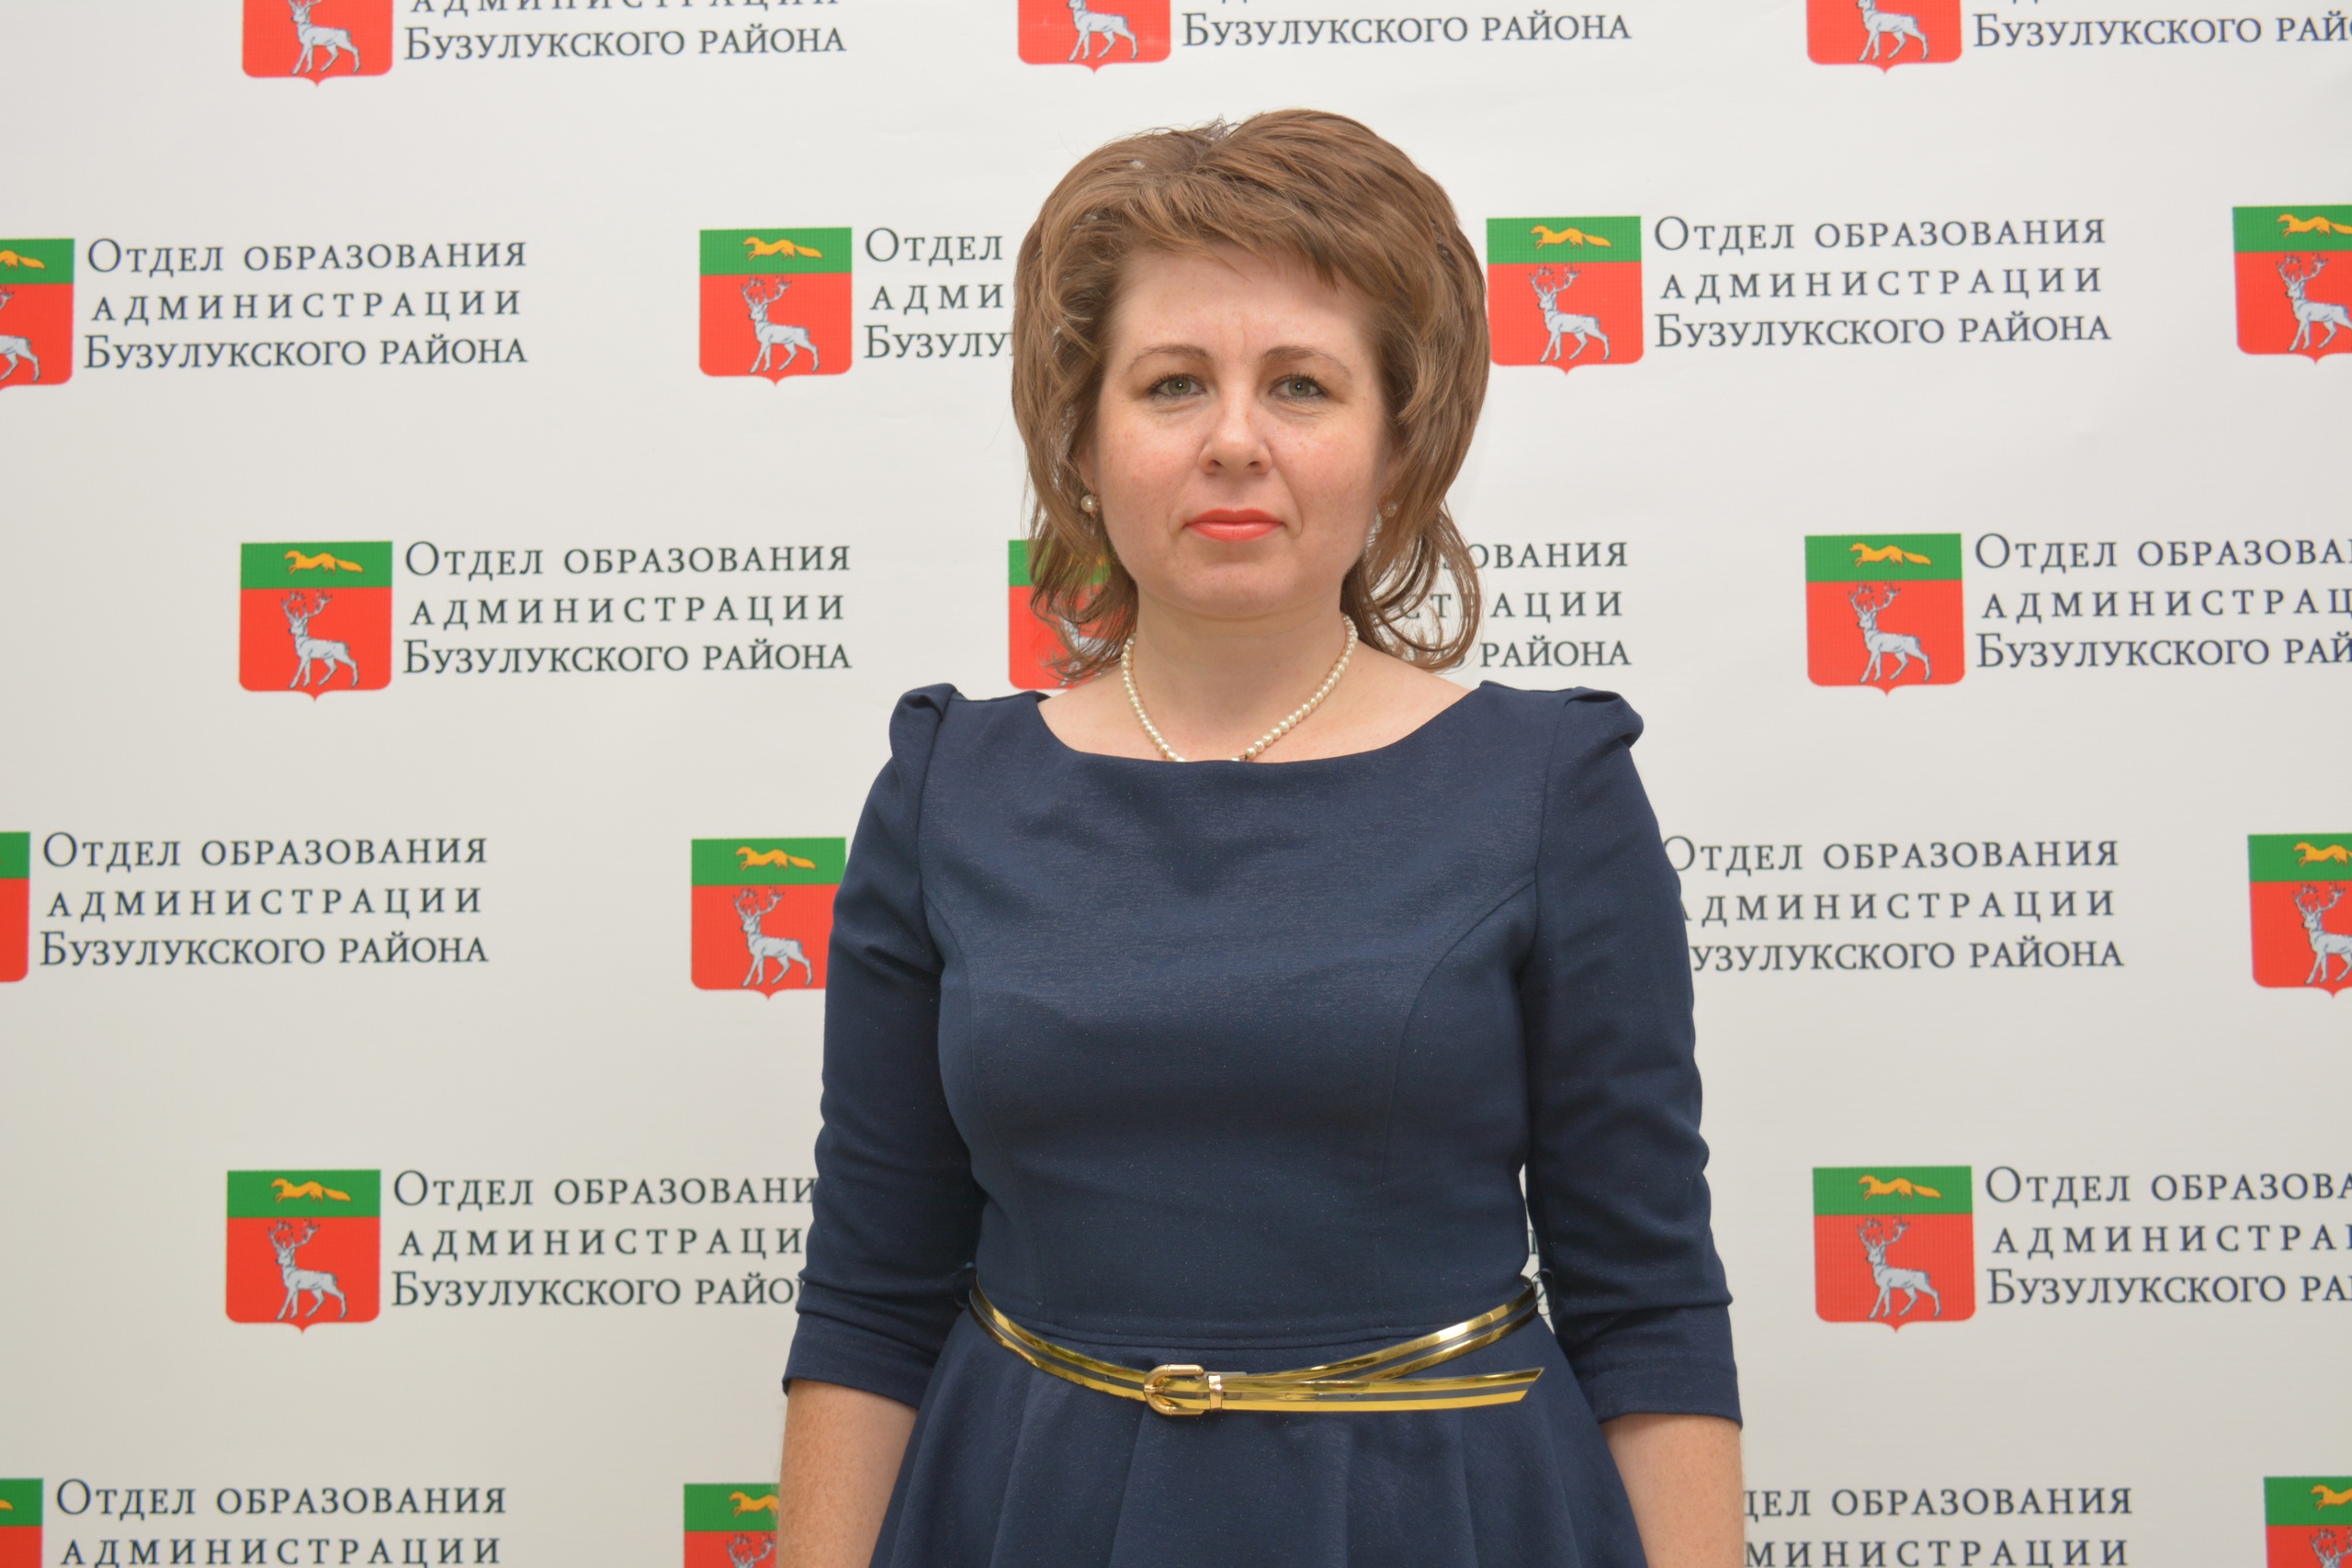 Ушакова Ирина Владимировна.